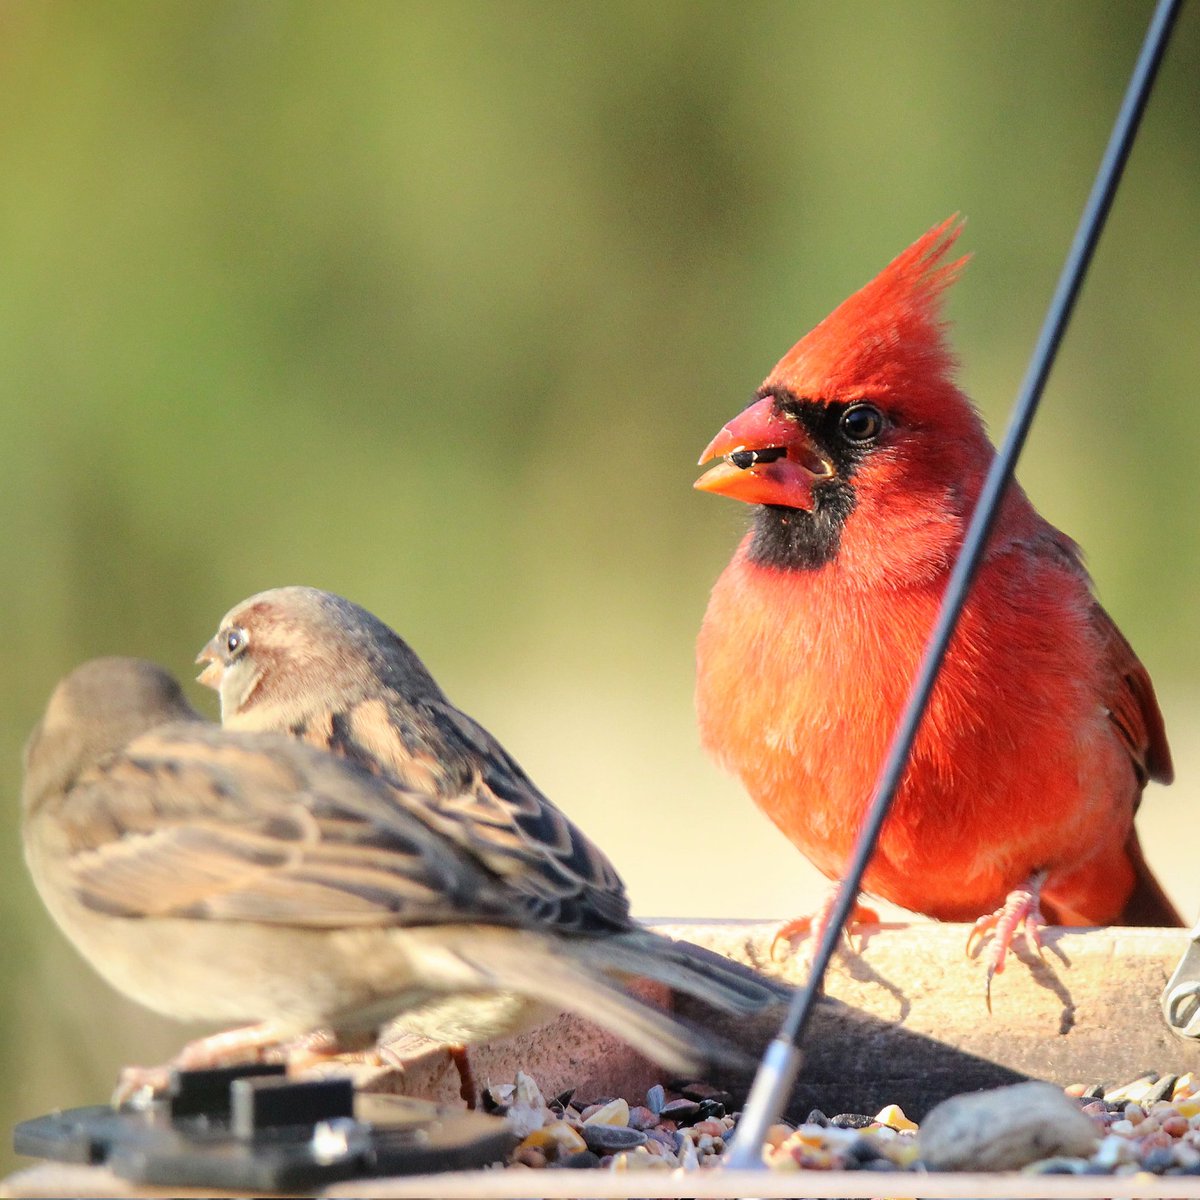 A friendly morning gathering...
#cardinals #cardinal #birding #malecardinals #malecardinal #housesparrows #sparrows #sparrow #birdworld #birds #morningvisitors #morningsun #morningroutines #ohiobirding